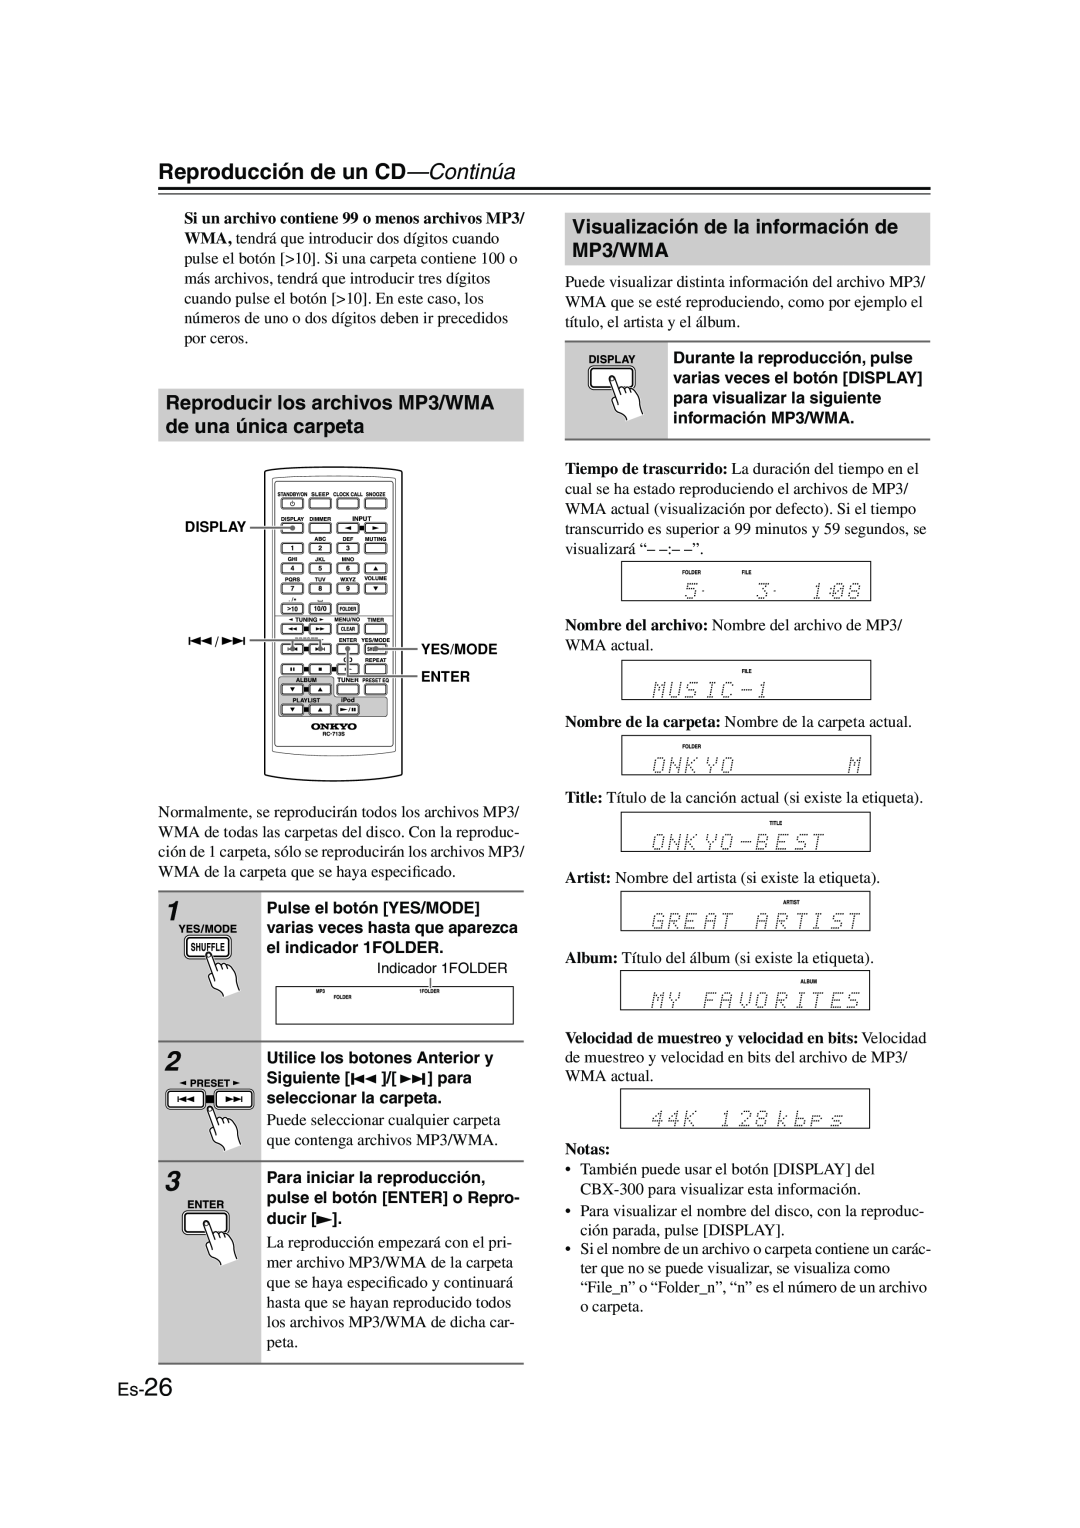 Onkyo CBX-300 instruction manual Visualización de la información de MP3/WMA, Es-26, Reproducción de un CD-Continúa, Notas 